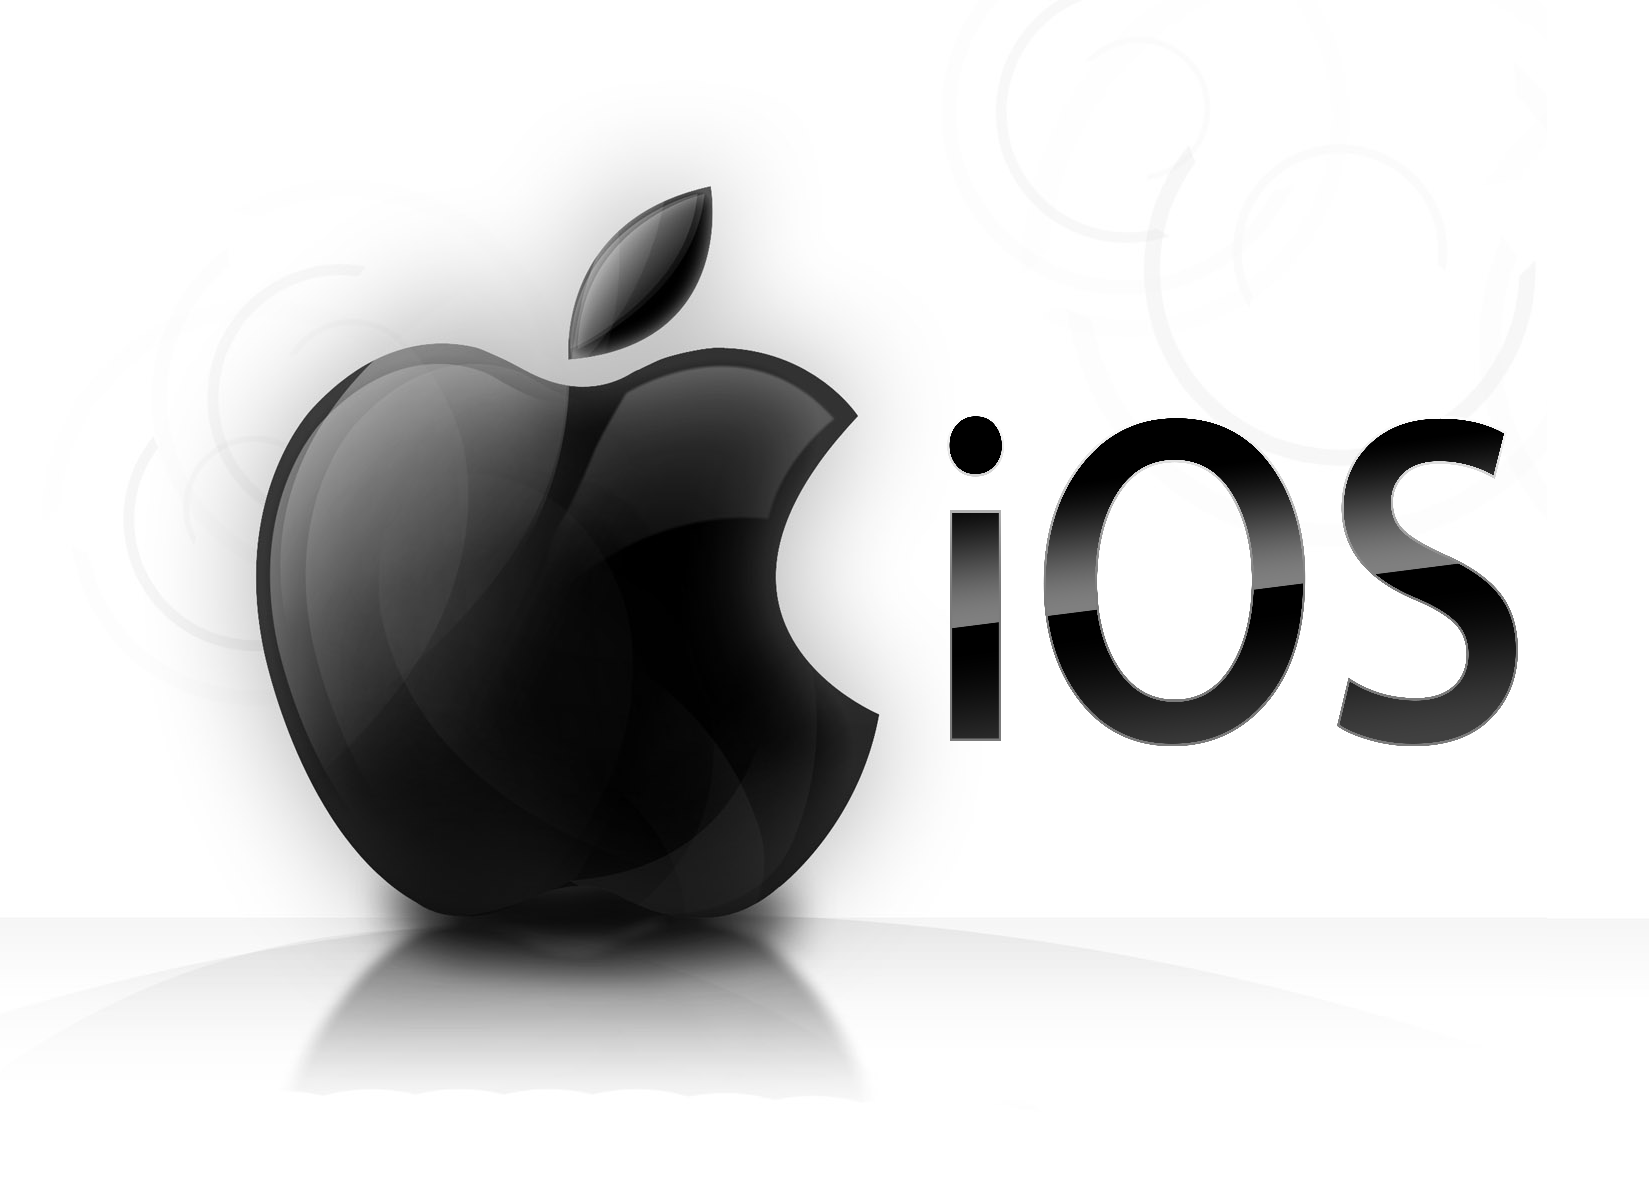 اپل اعلام کرده است که iOS 9.0.2 به زودی عرضه خواهد شد - تکفارس 